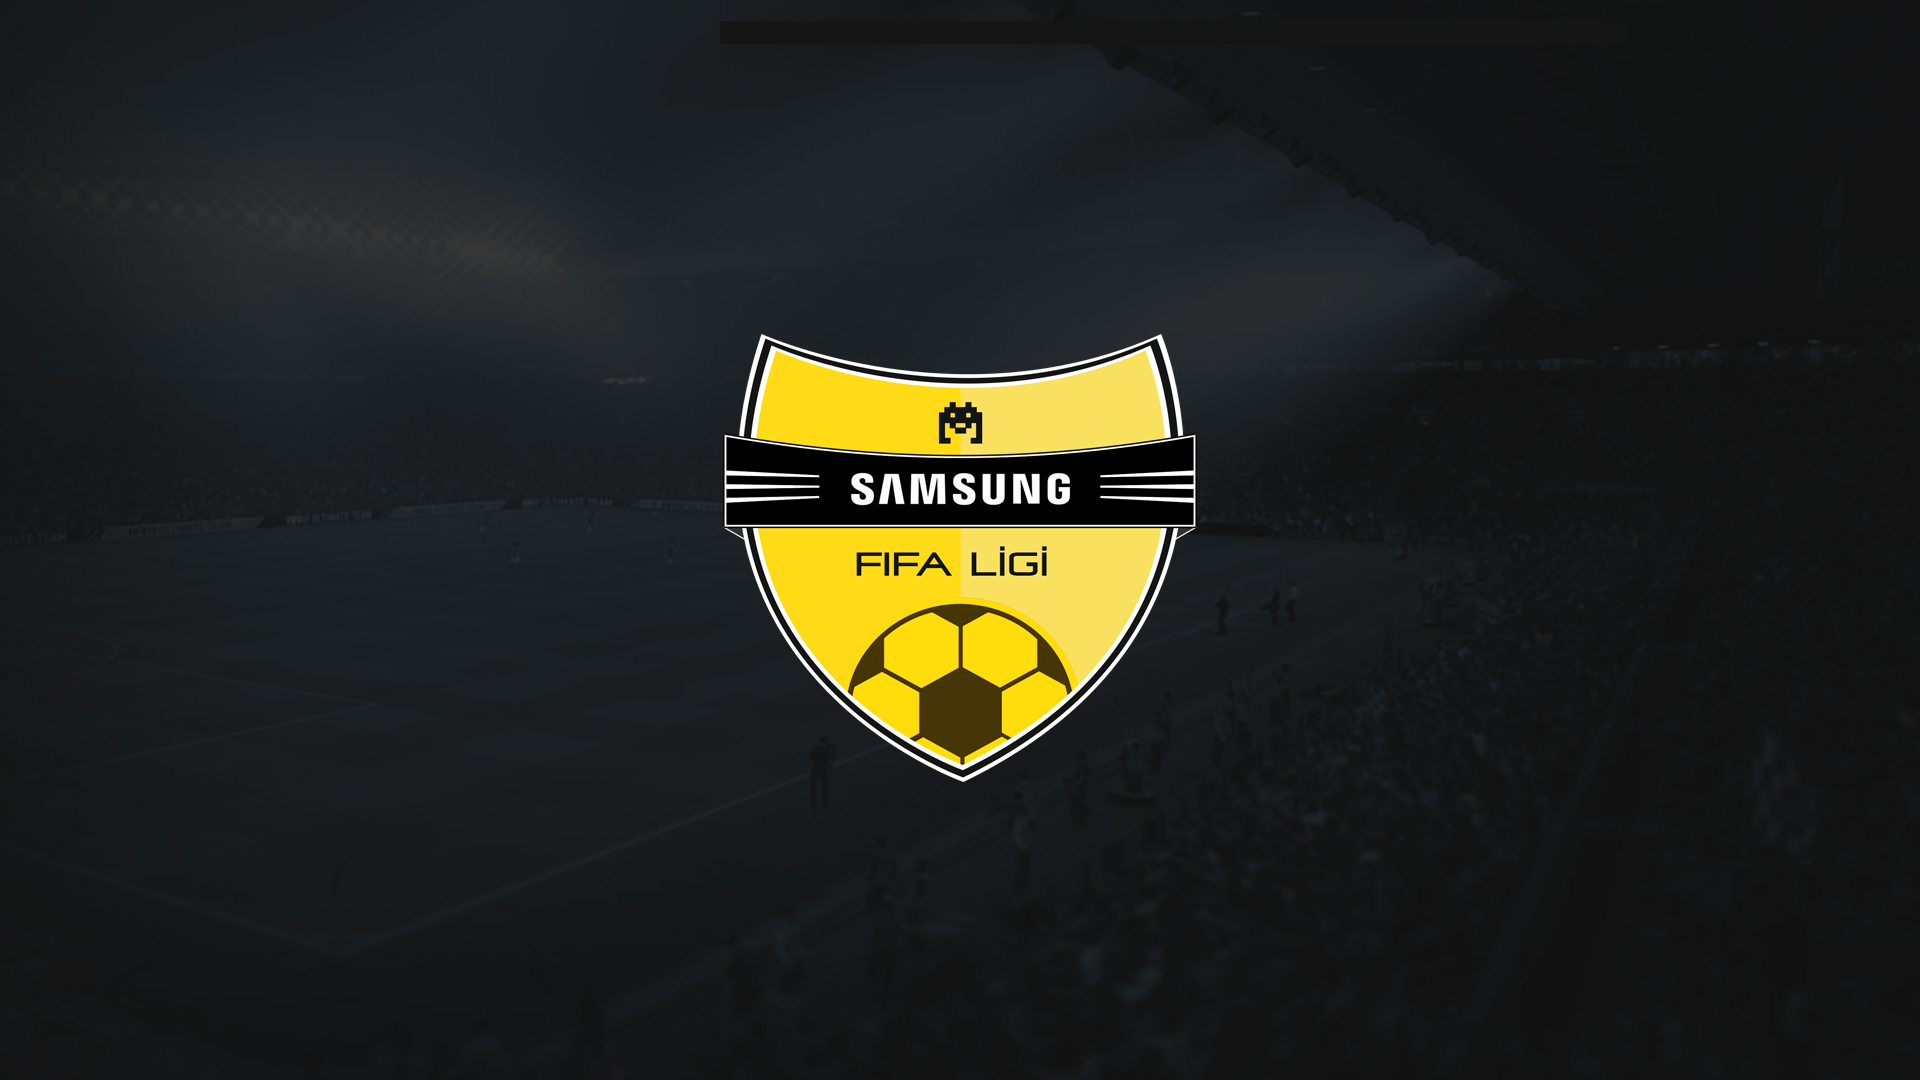 SAMSUNG FIFA LİGİ’nde PlayOff Eşleşmeleri Belli Oldu!